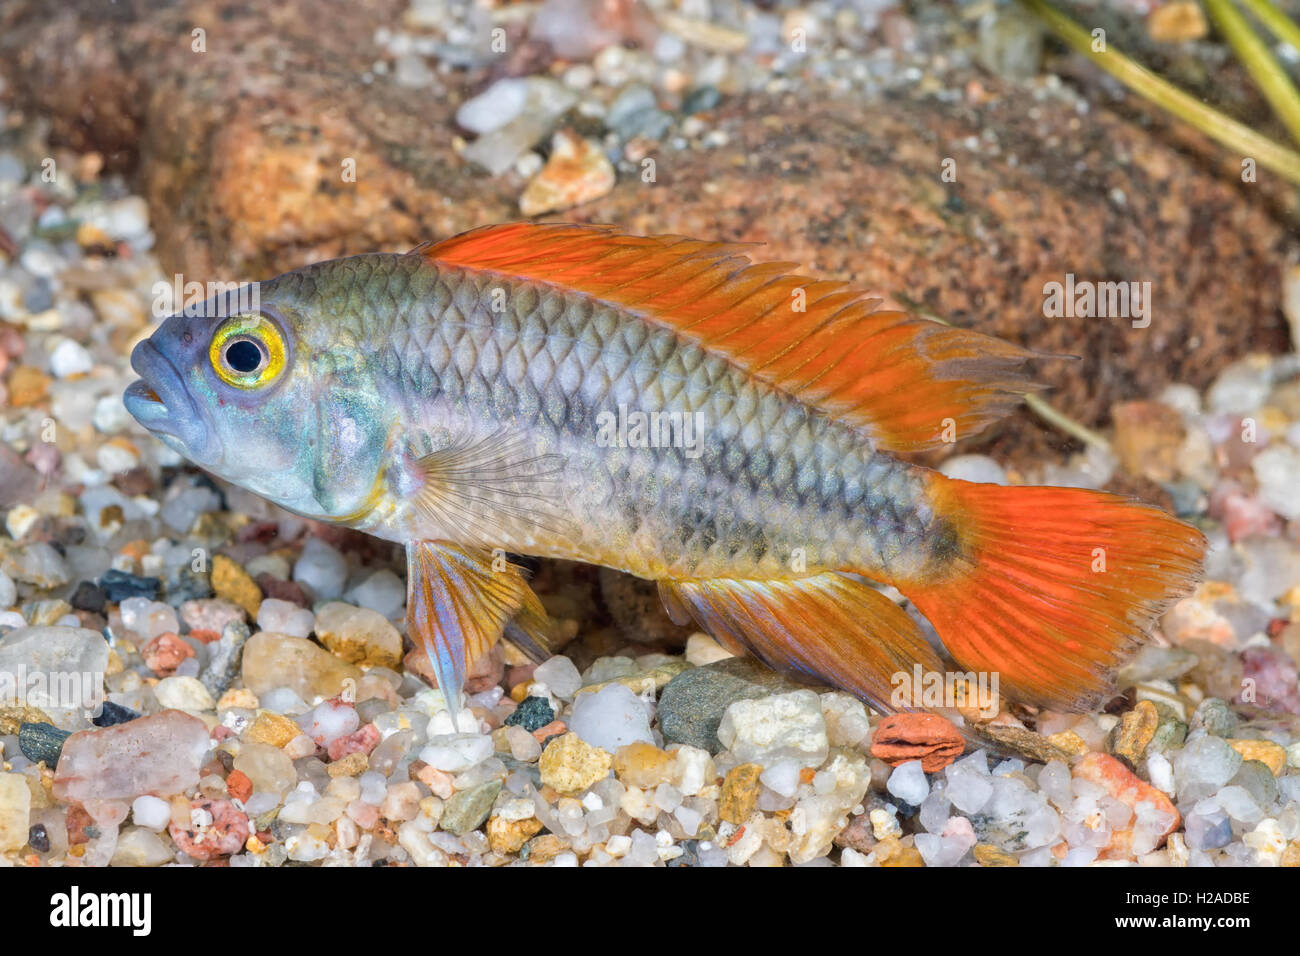 Cichlid fish Apistogramma cacatuoides in a aquarium Stock Photo